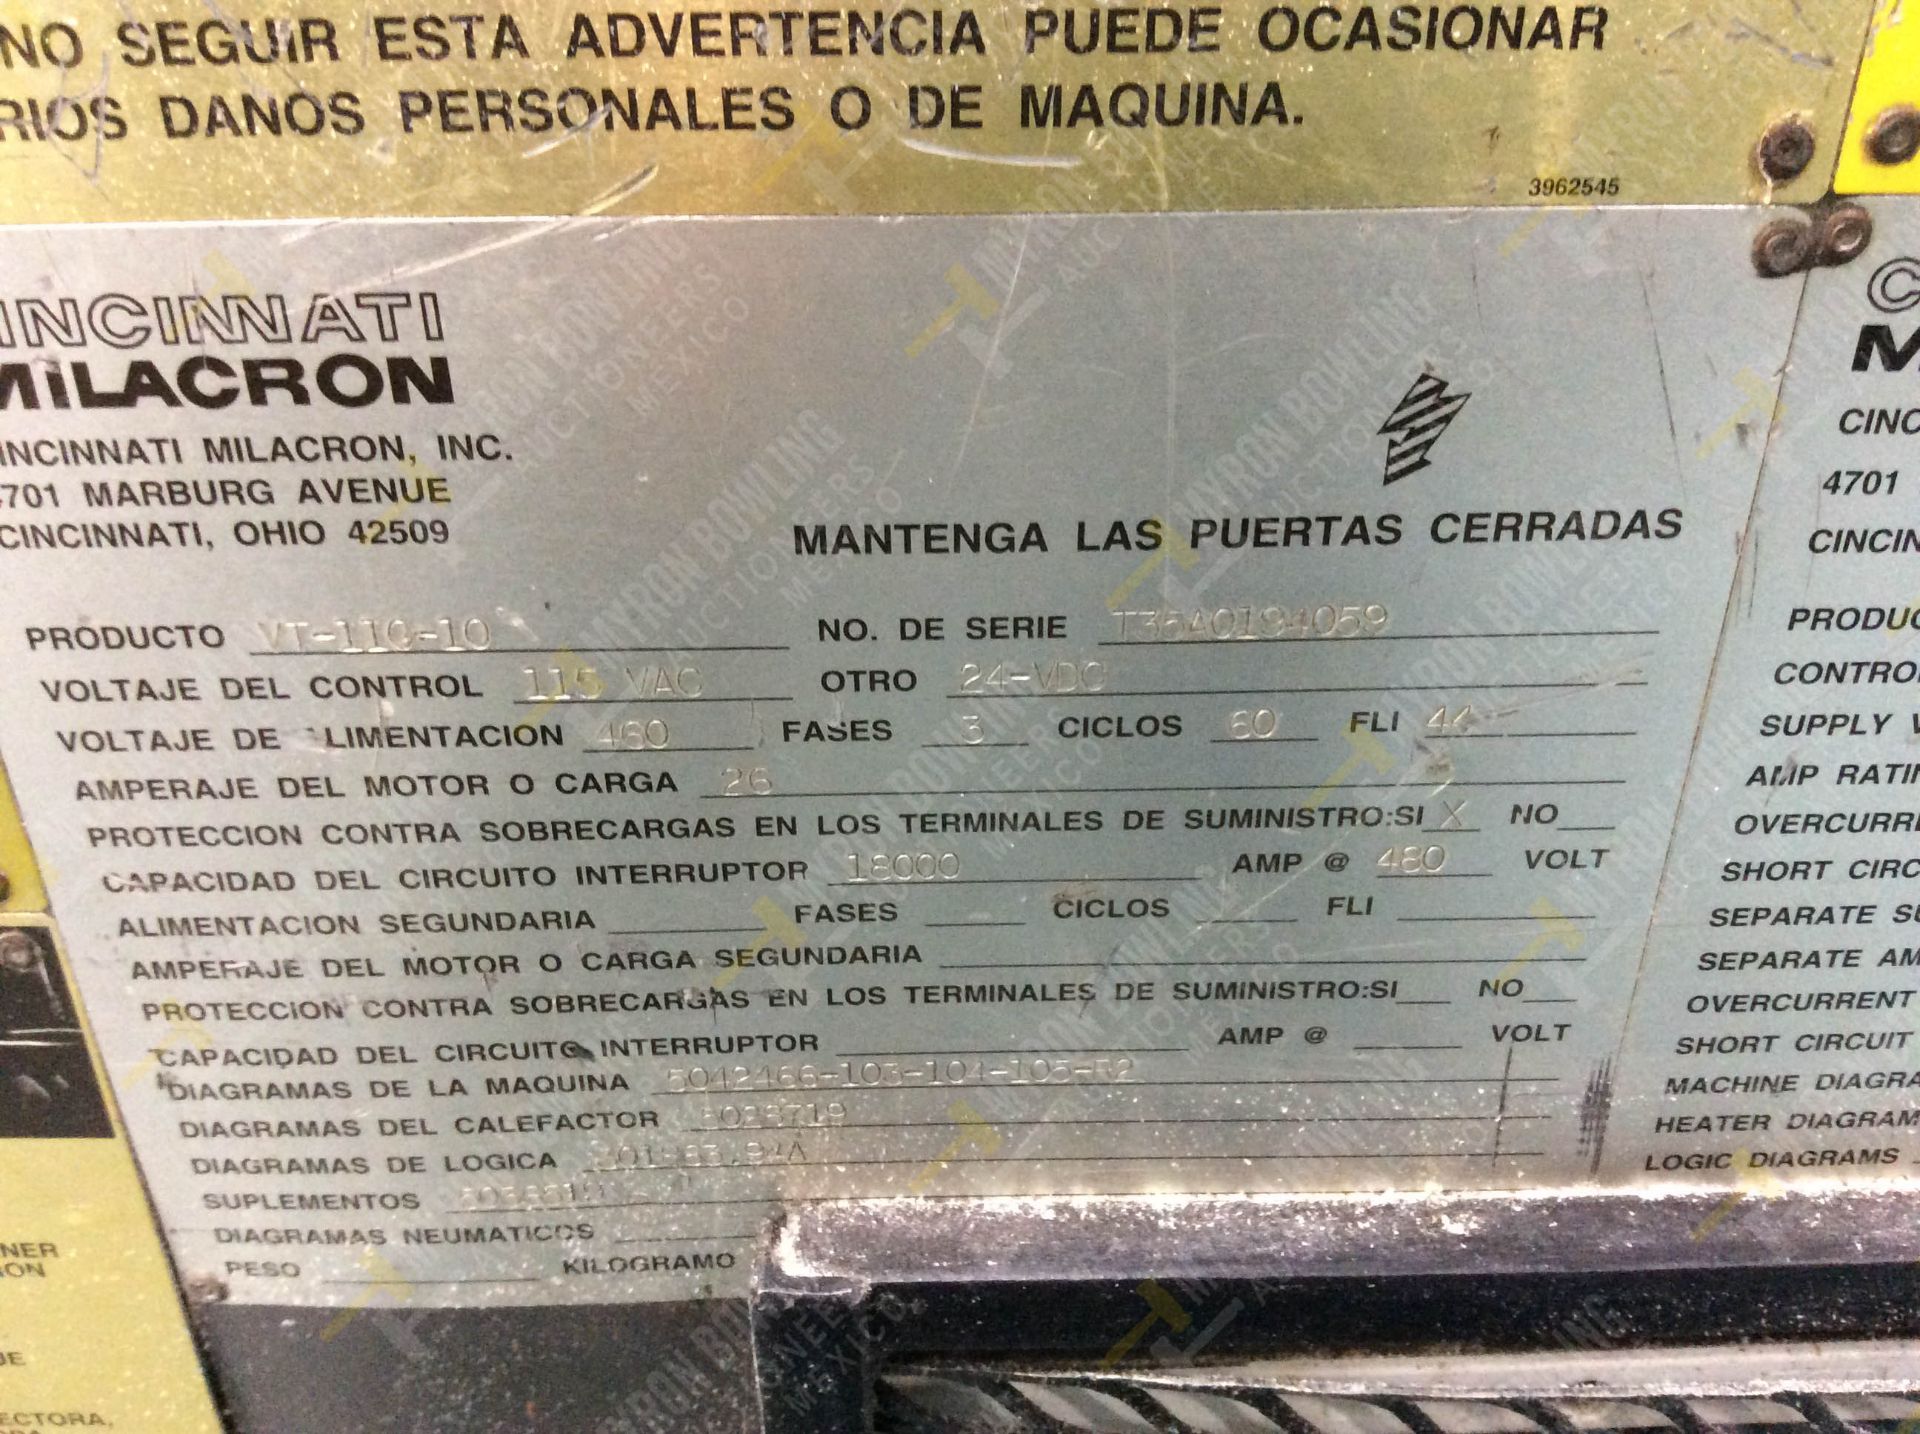 INYECTORA DE PLASTICO, MARCA CINCINNATI MILACRON, NO. SERIE T35A0194059, NO. ACTIVO D03, AÑO 1994, - Image 21 of 22